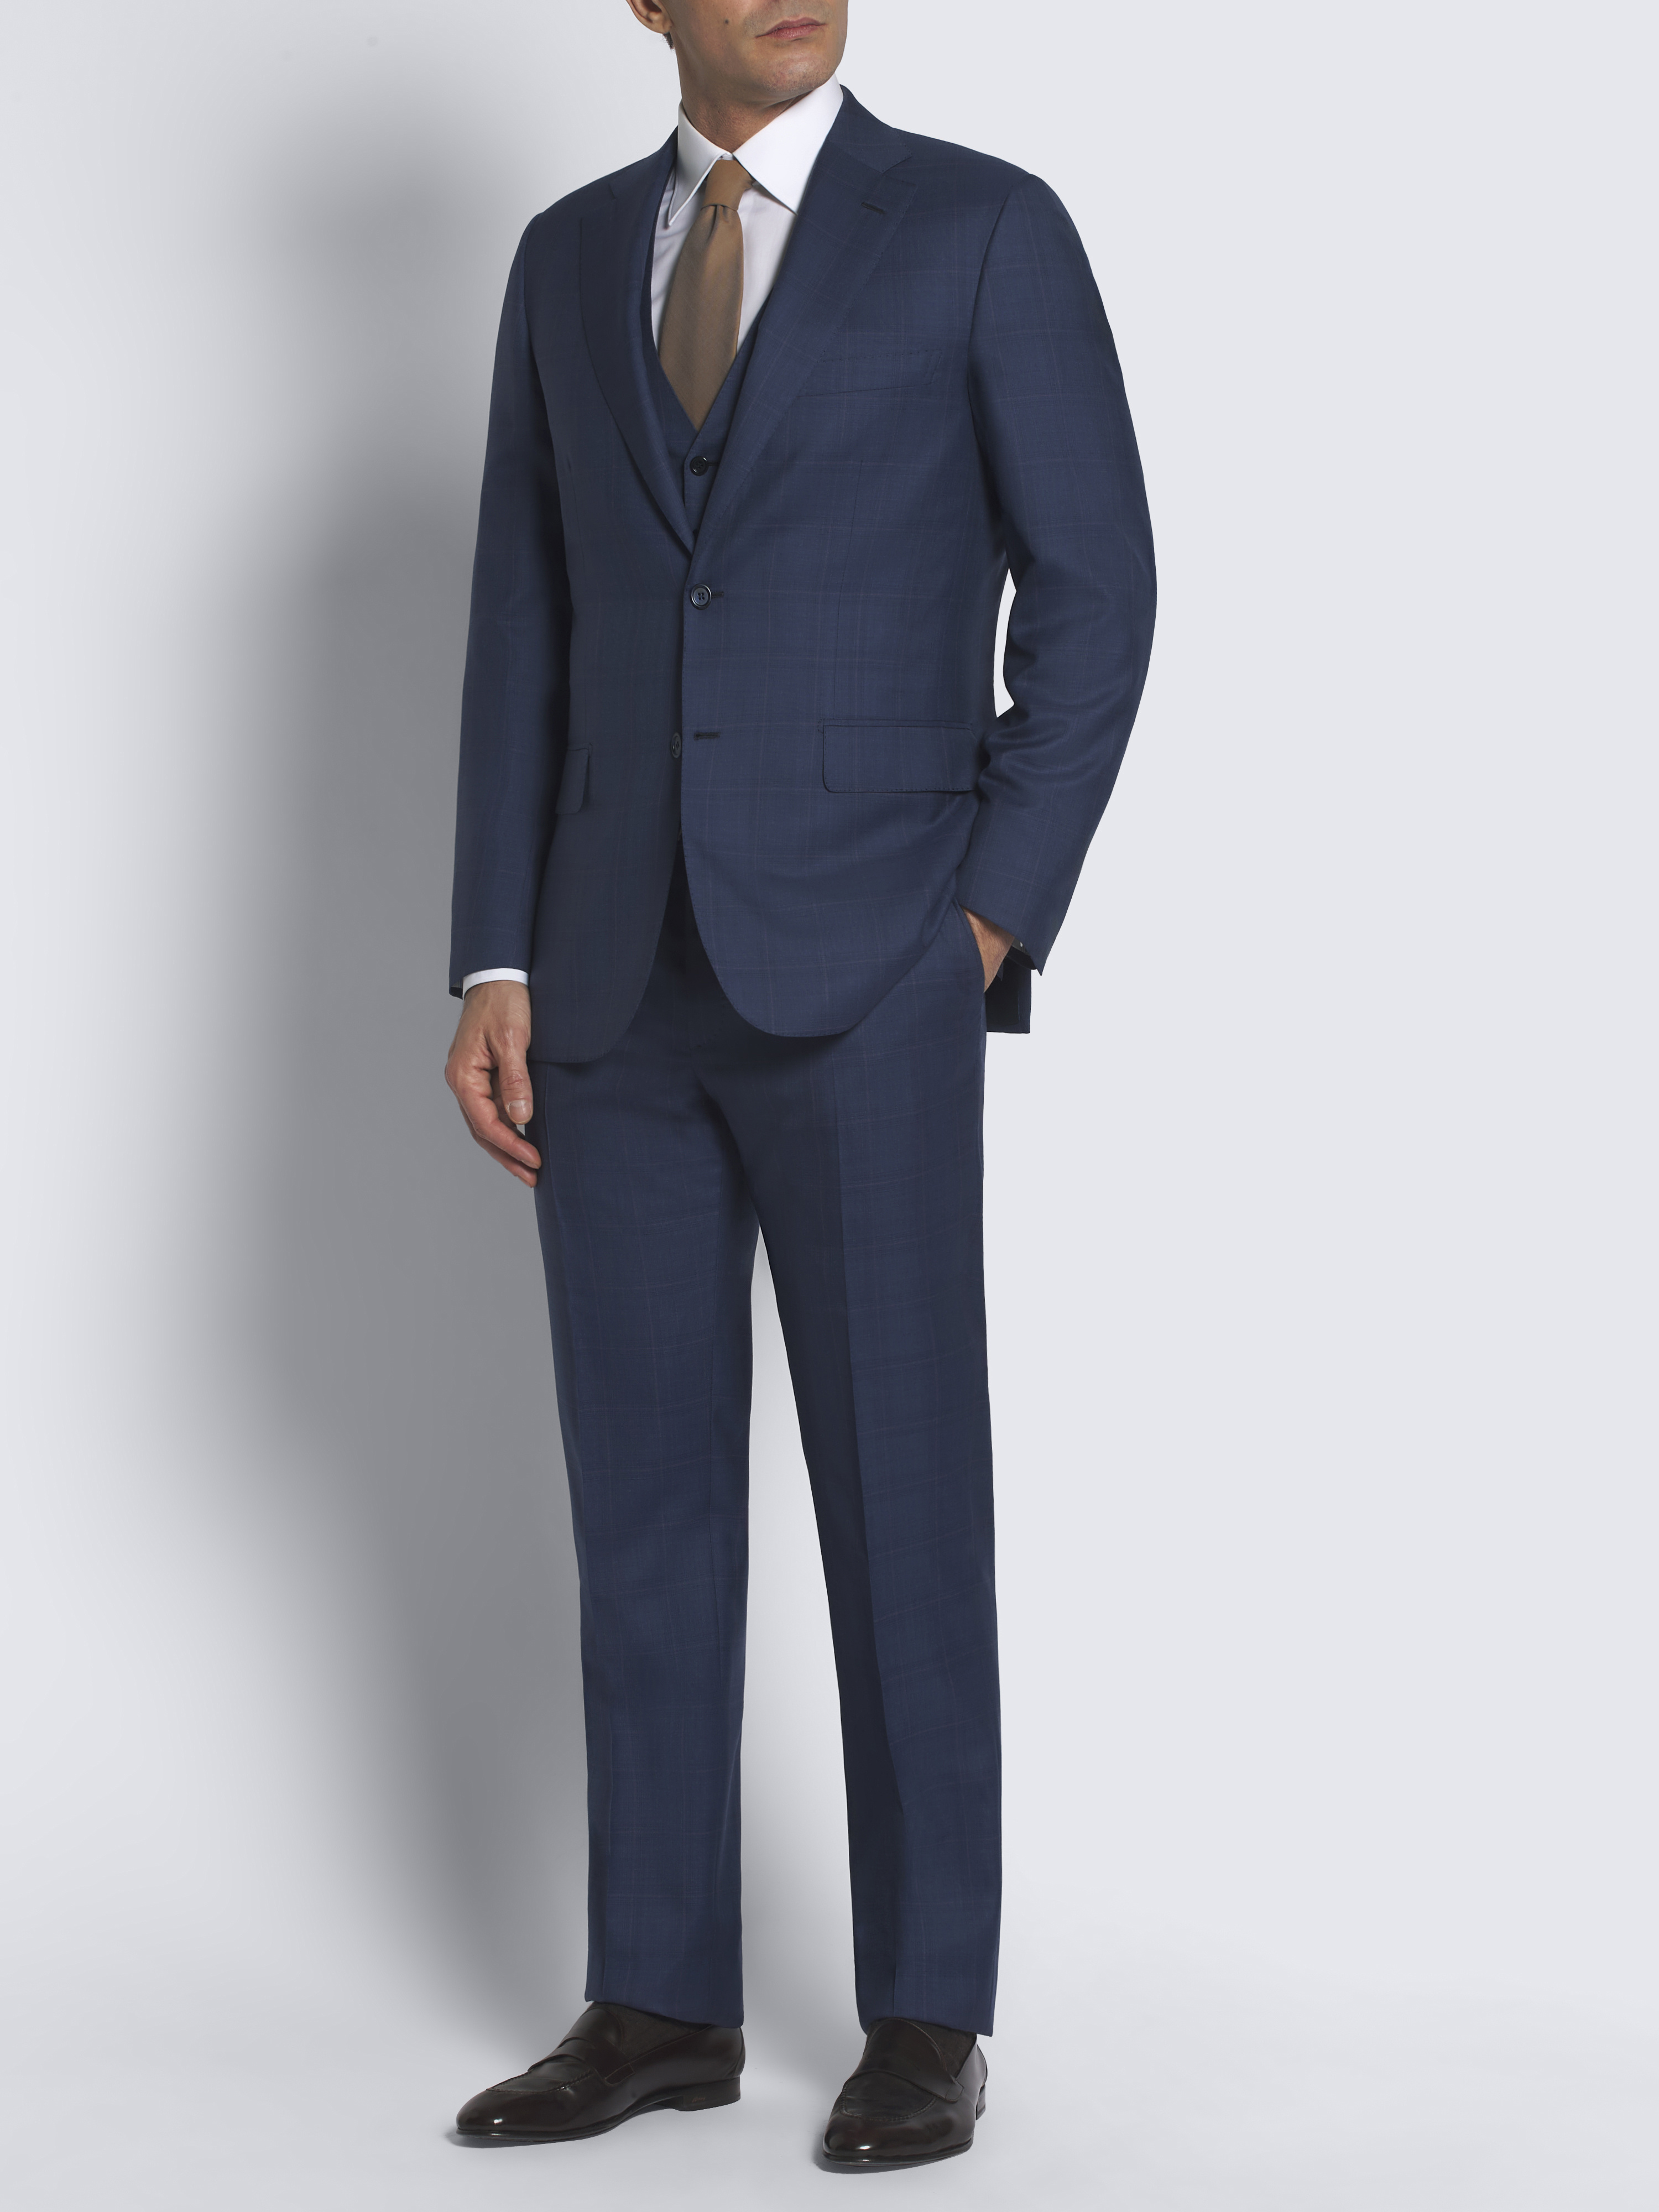 Suits | Brioni® US Official Store